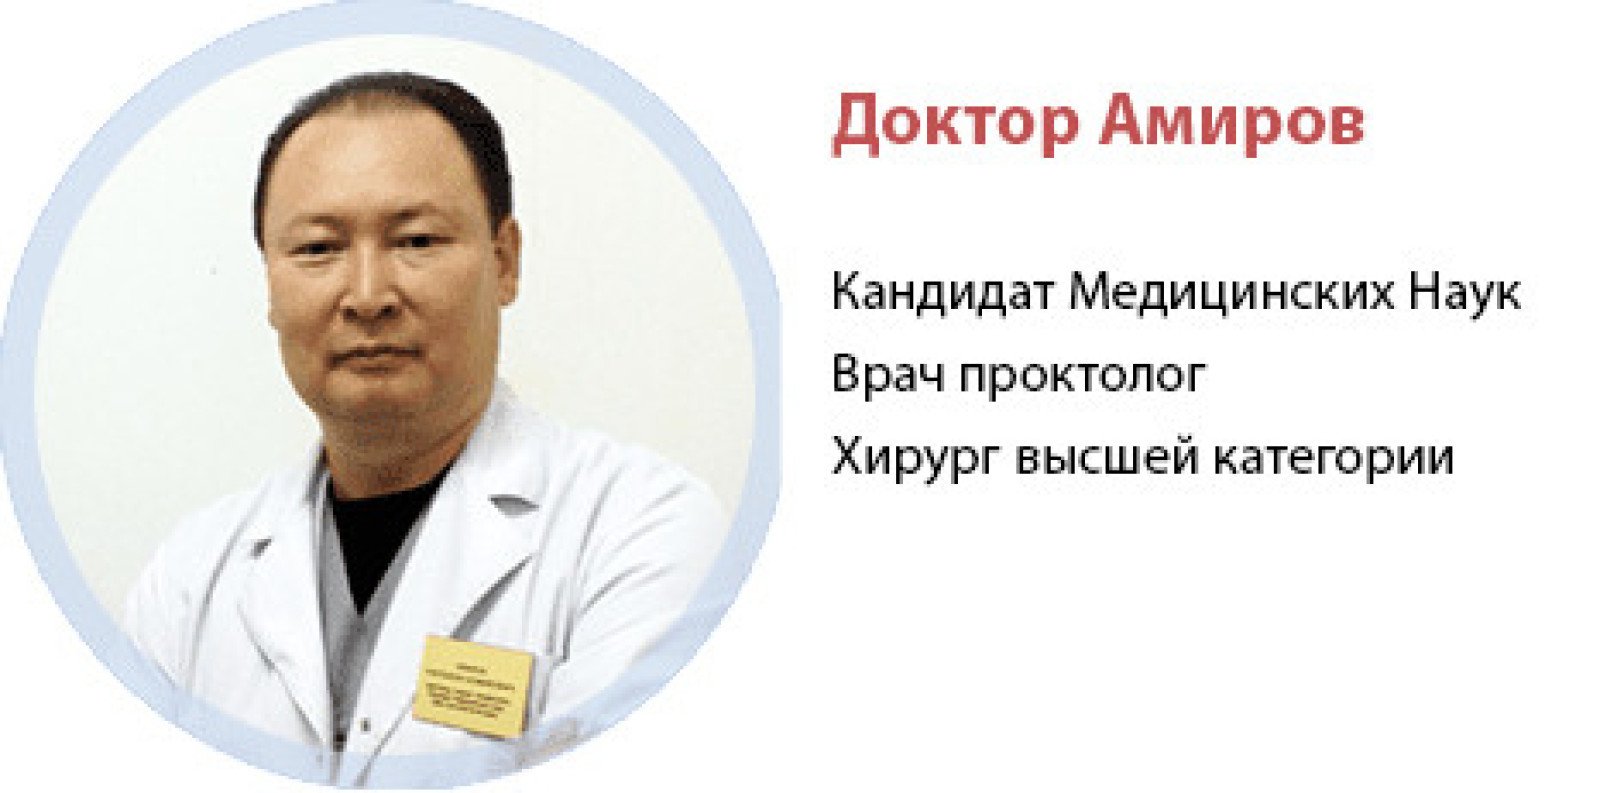 Доктор Амиров о проктологии и безоперационном лечении геморроя